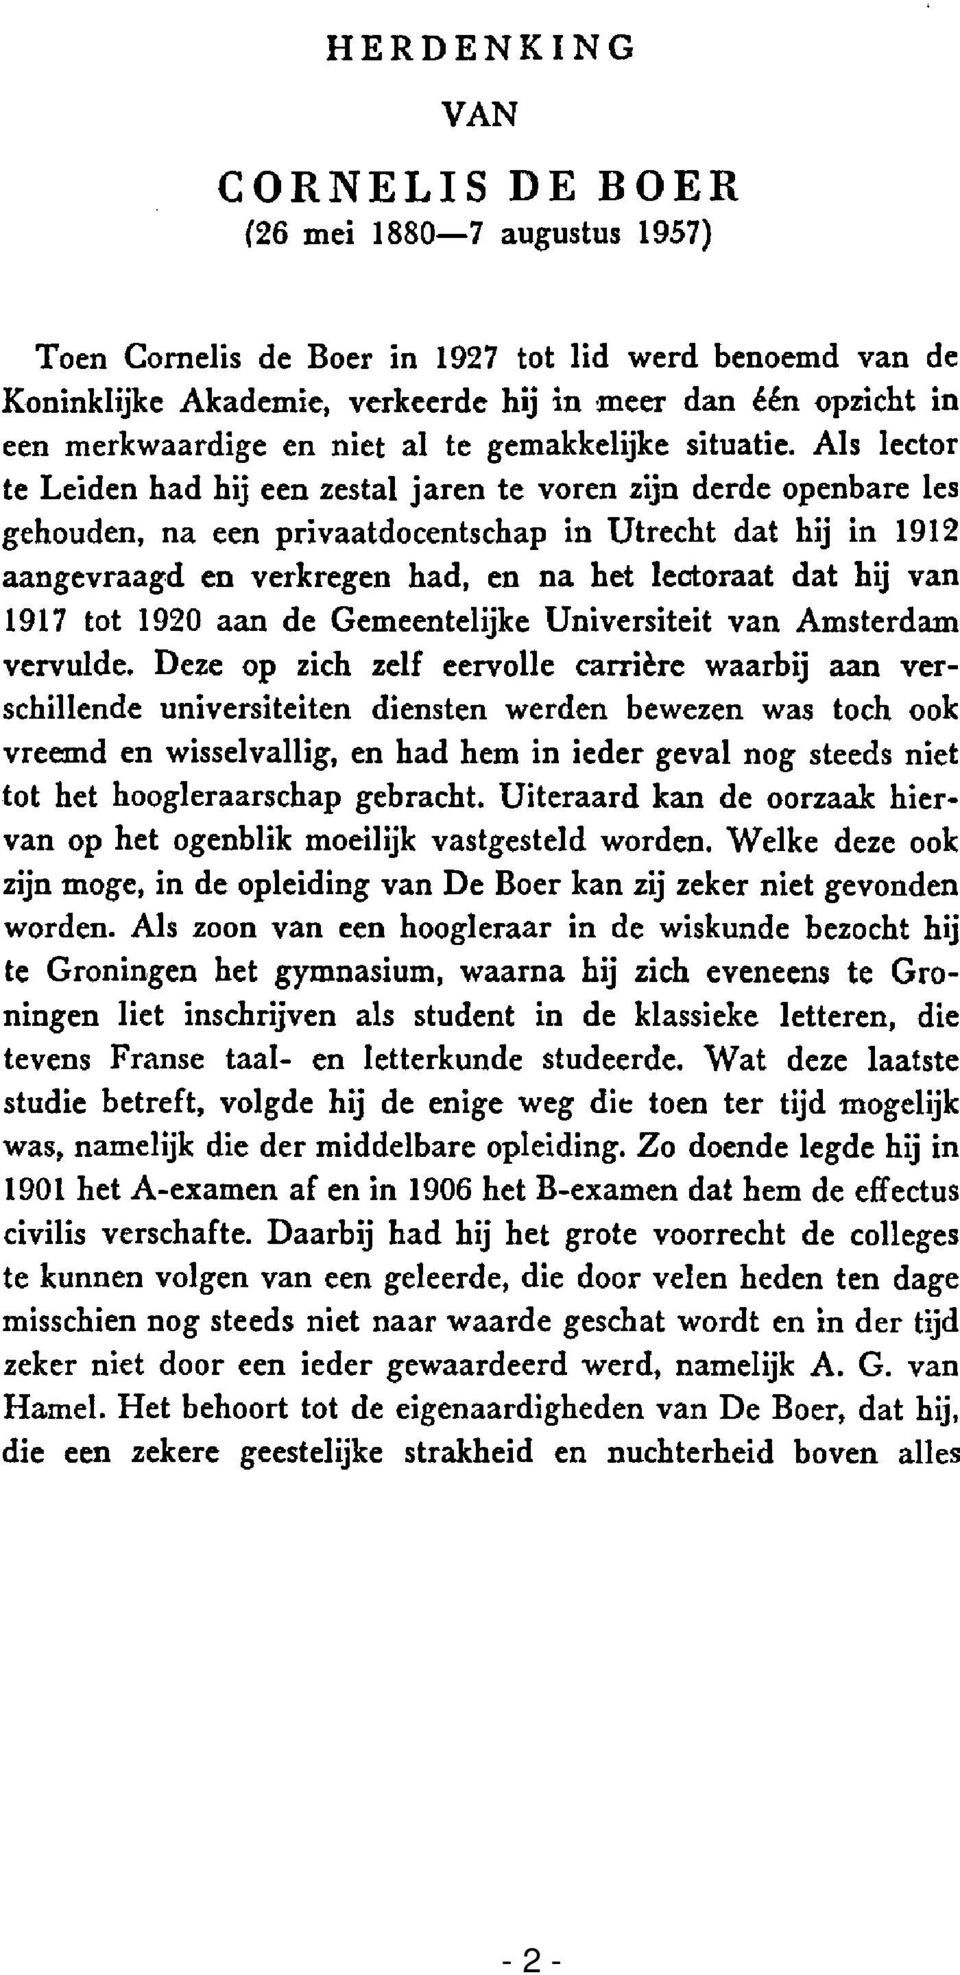 Als lector te Leiden had hij een zestal jaren te voren zijn derde openbare les gehouden, na een privaatdocentschap in Utrecht dat hij in 1912 aangevraagd en verkregen had, en na het lectoraat dat hij